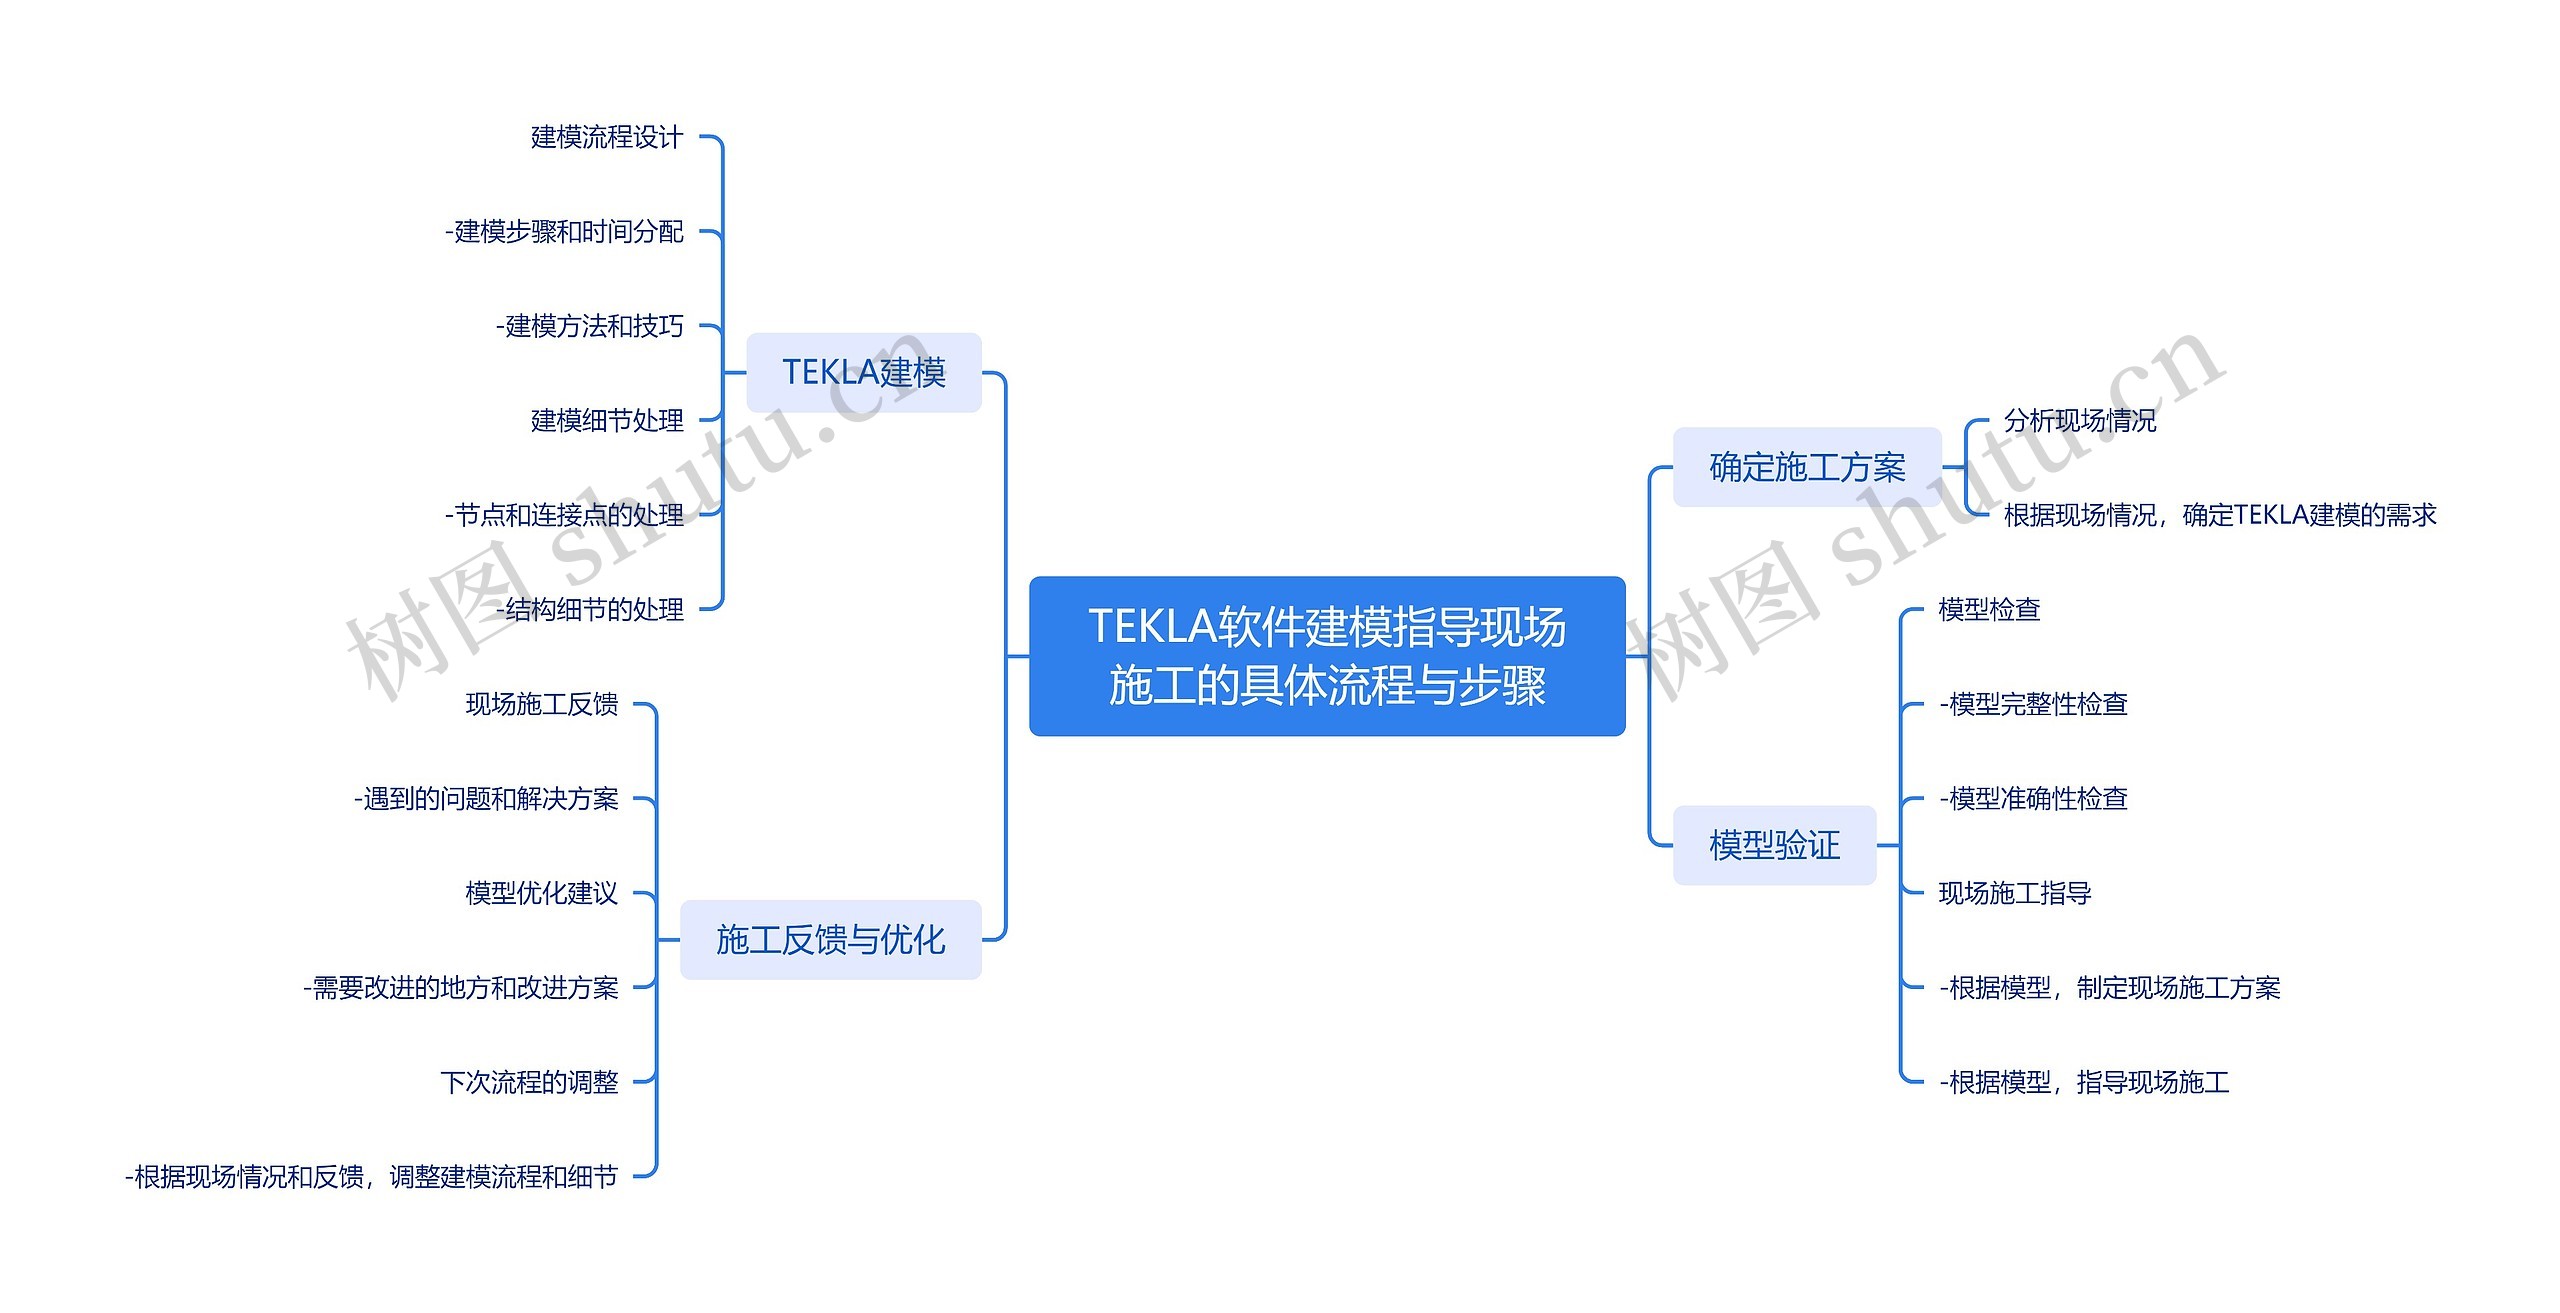 TEKLA软件建模指导现场施工的具体流程与步骤